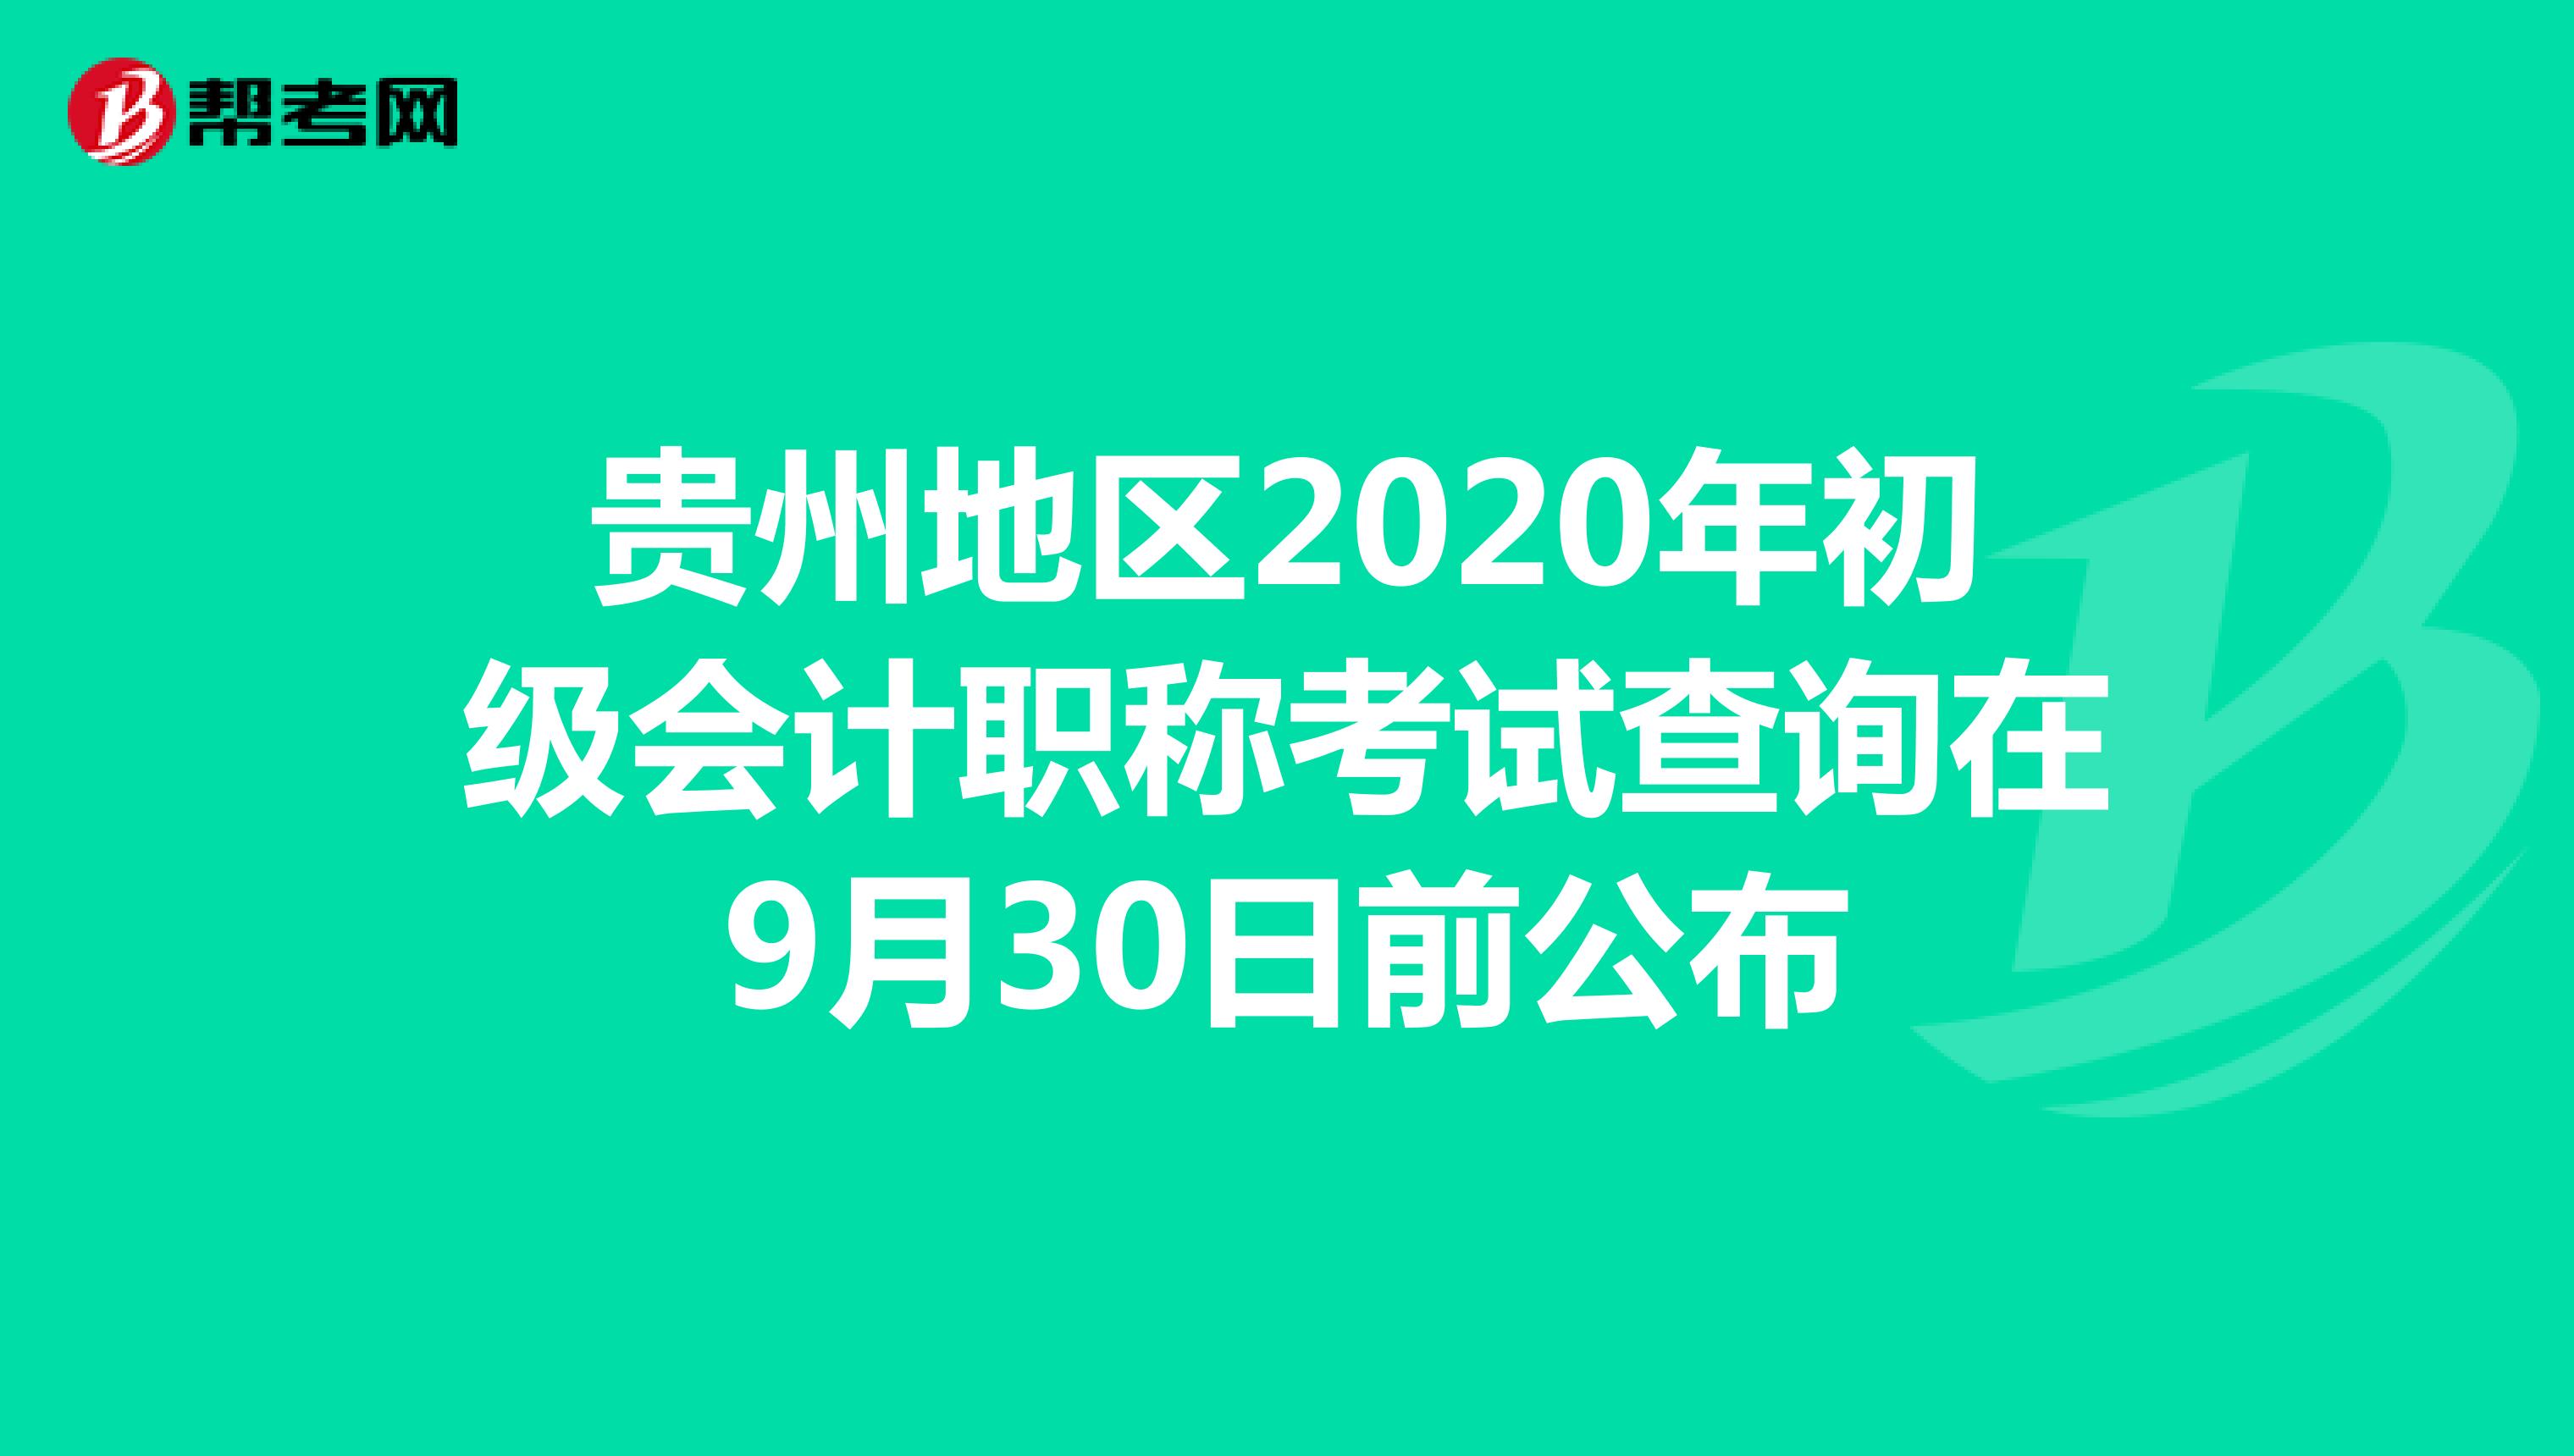 贵州地区2020年初级会计职称考试查询在9月30日前公布